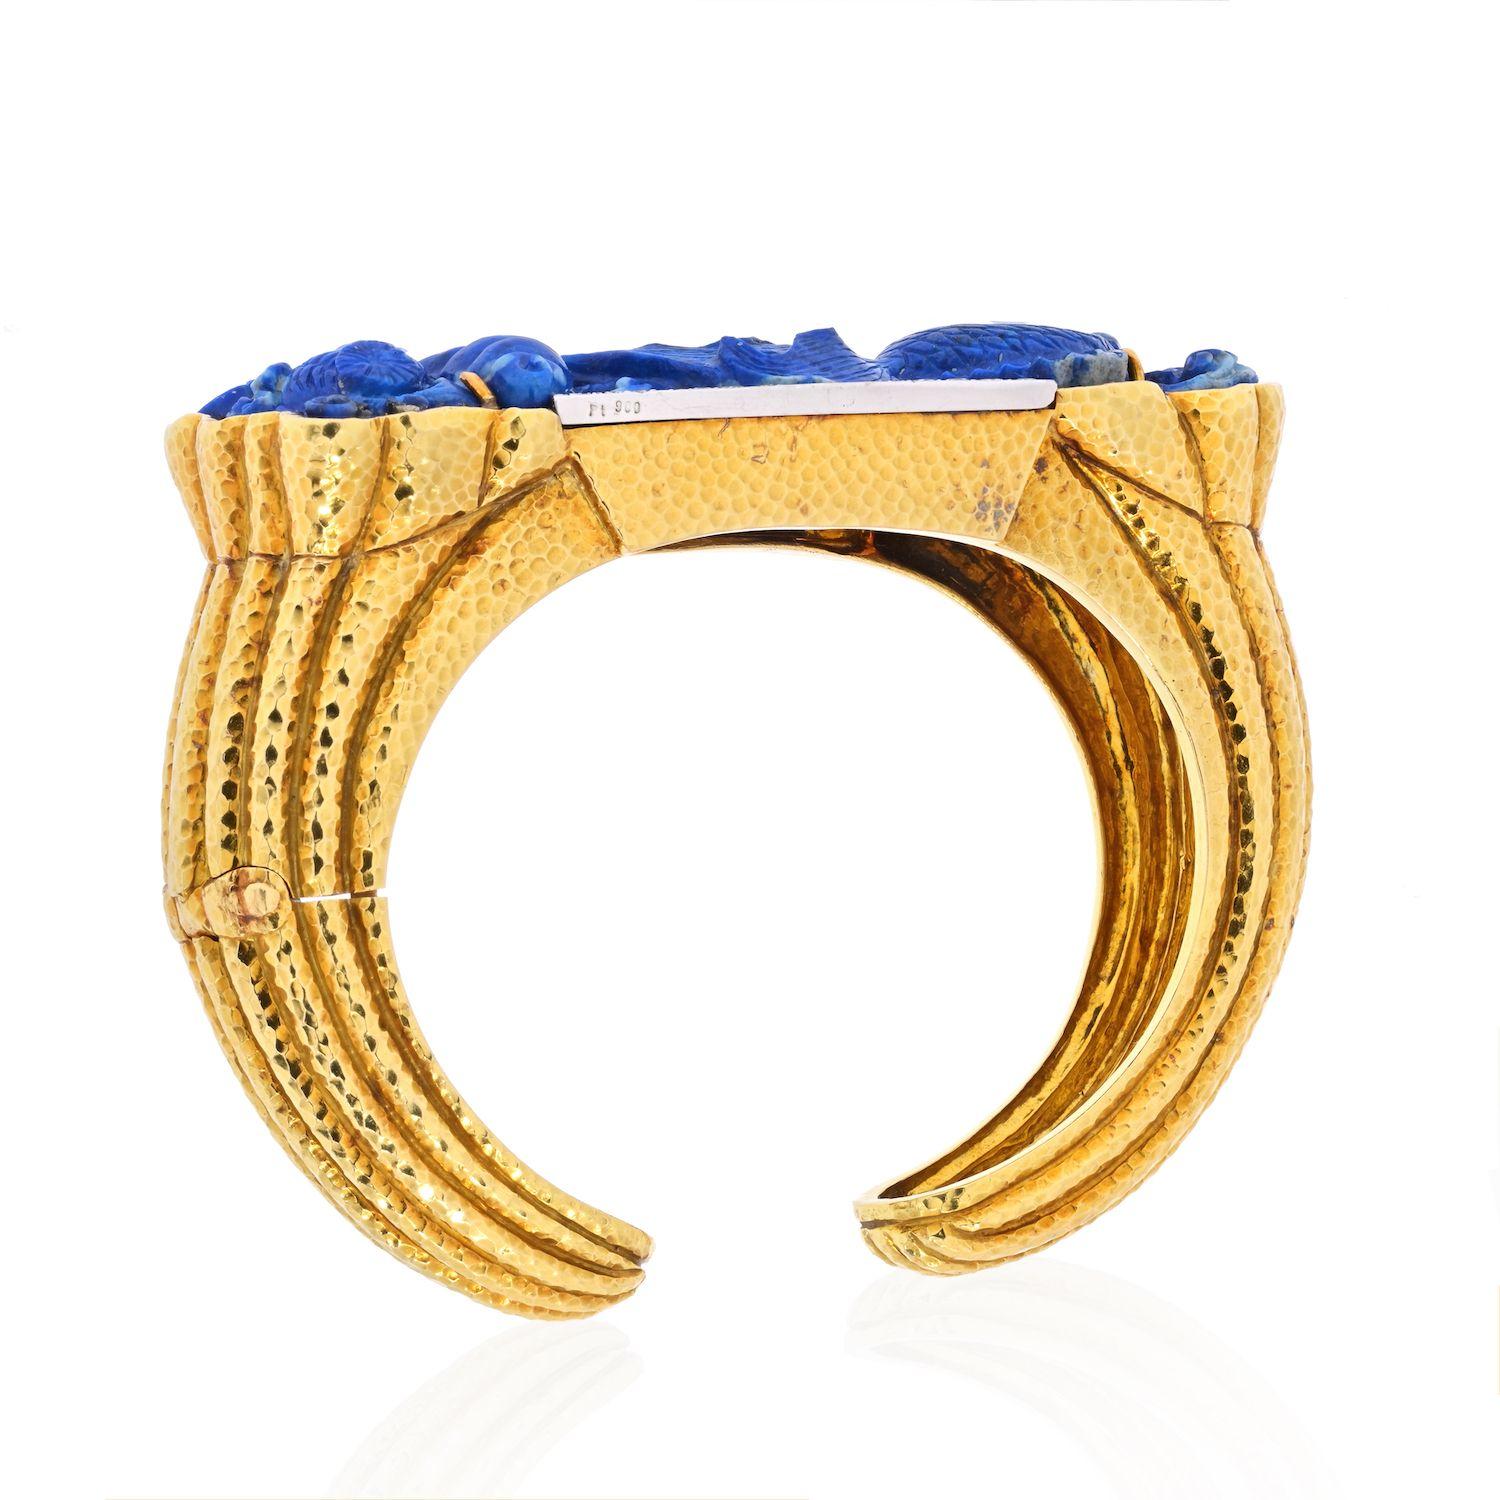 Bracelet élégant, stylé et coloré créé par David Webb dans les années 1980. Réalisé en lapis-lazuli sculpté, en or jaune 18 carats et rehaussé de diamants ronds de taille brillant (couleur F-G, pureté VS, poids total approximatif de 0,55 carat).